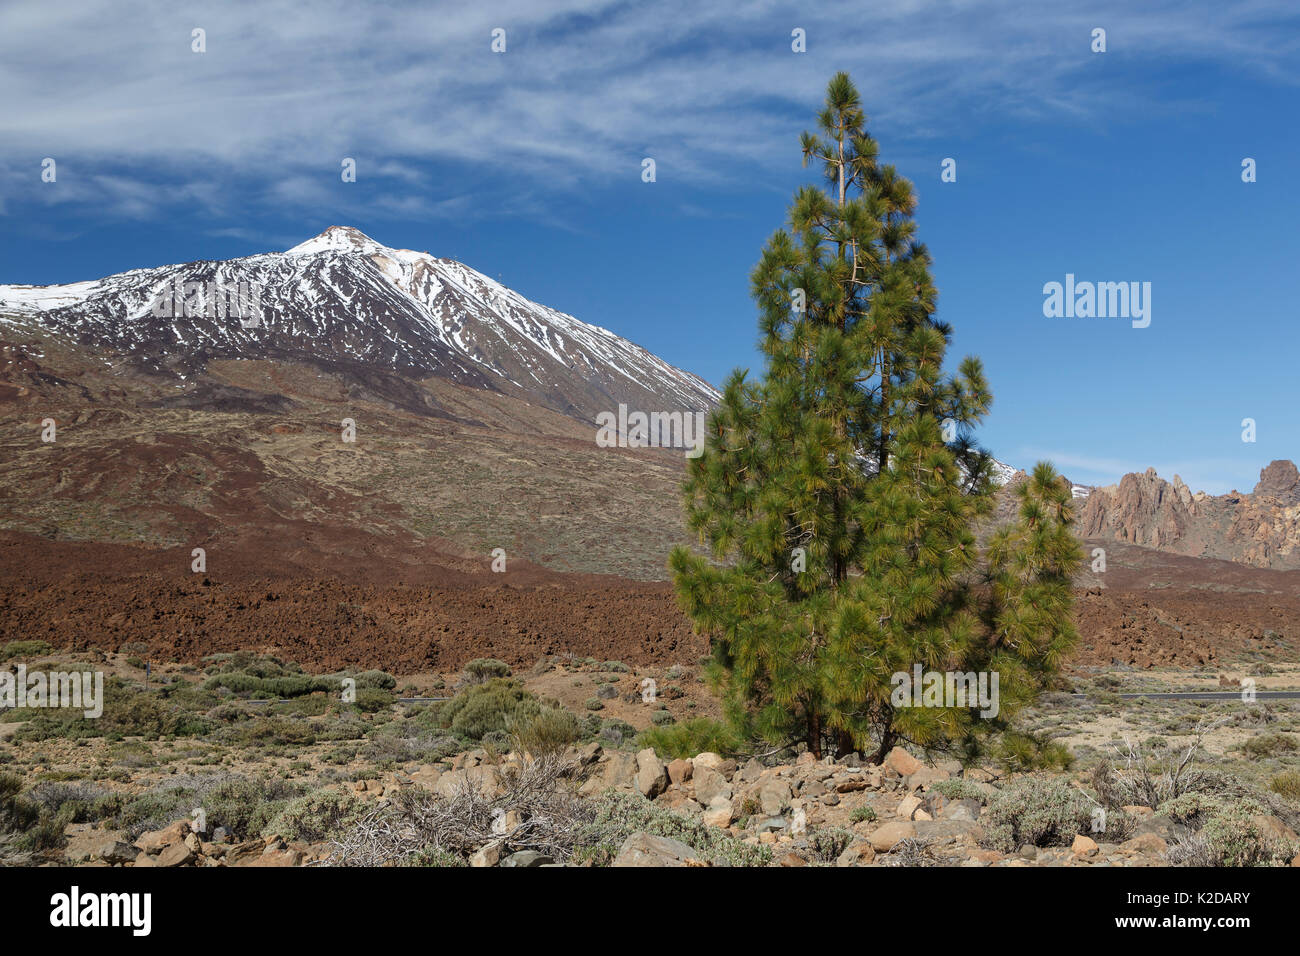 Île des Canaries pin (Pinus canariensis) et le Mont Teide, Tenerife, Canaries, Espagne. Endémique à quatre des îles Canaries Banque D'Images